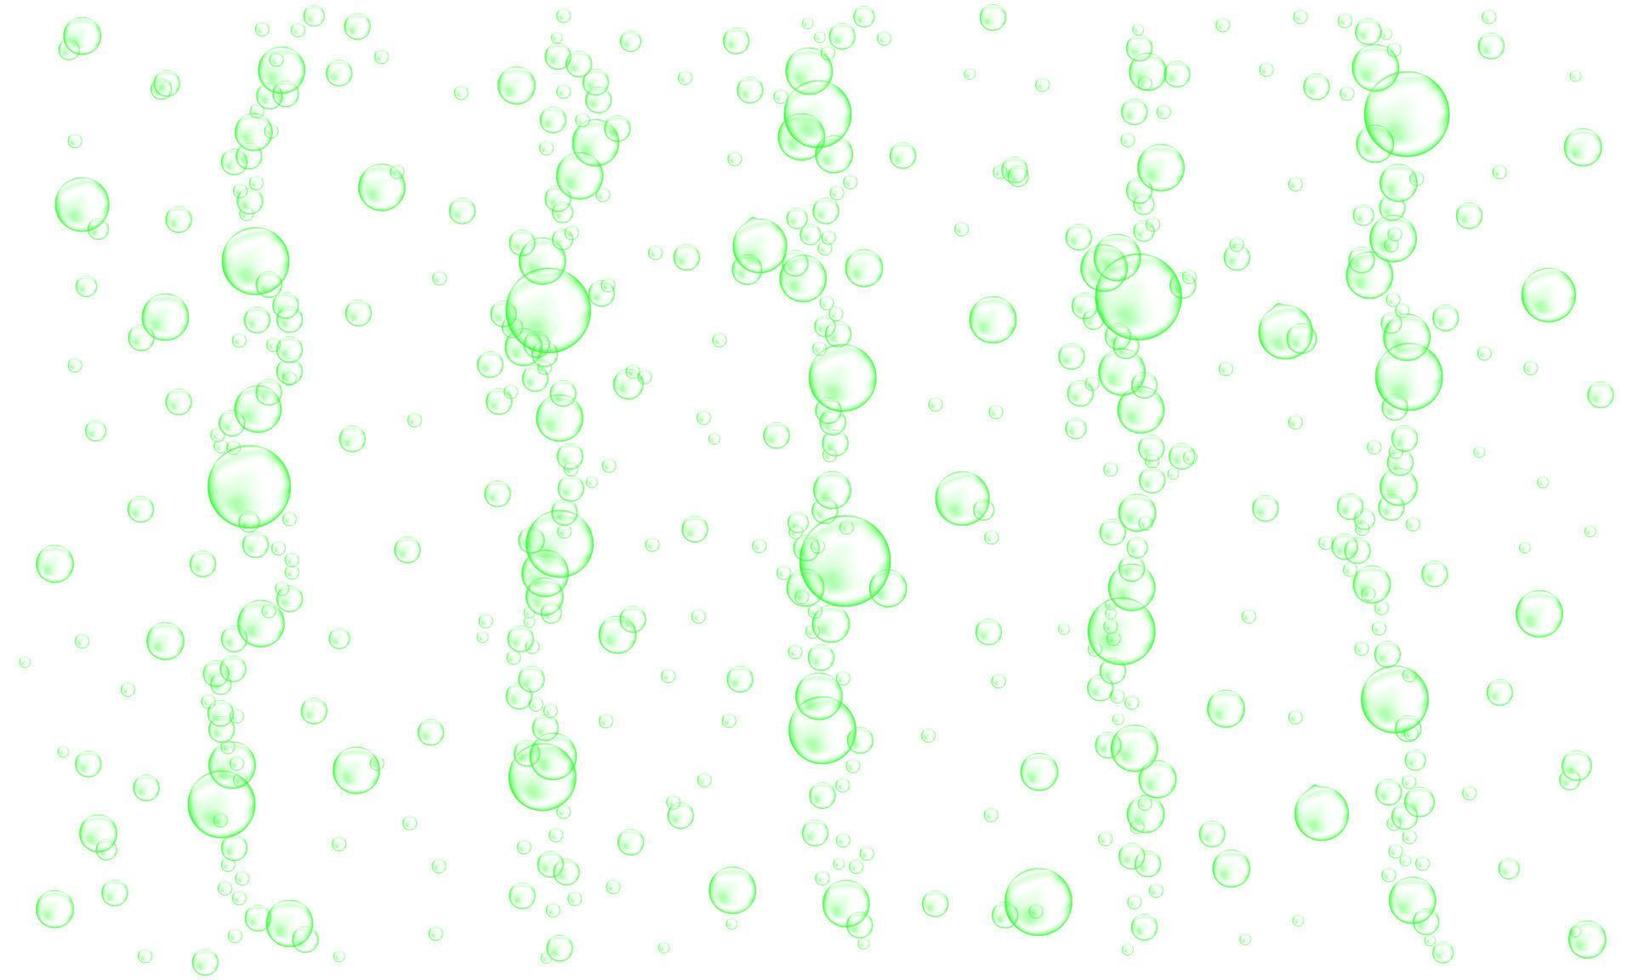 burbujas submarinas verdes aisladas sobre fondo blanco. bebida gaseosa carbonatada, espuma de jabón, champú o espuma limpiadora vector